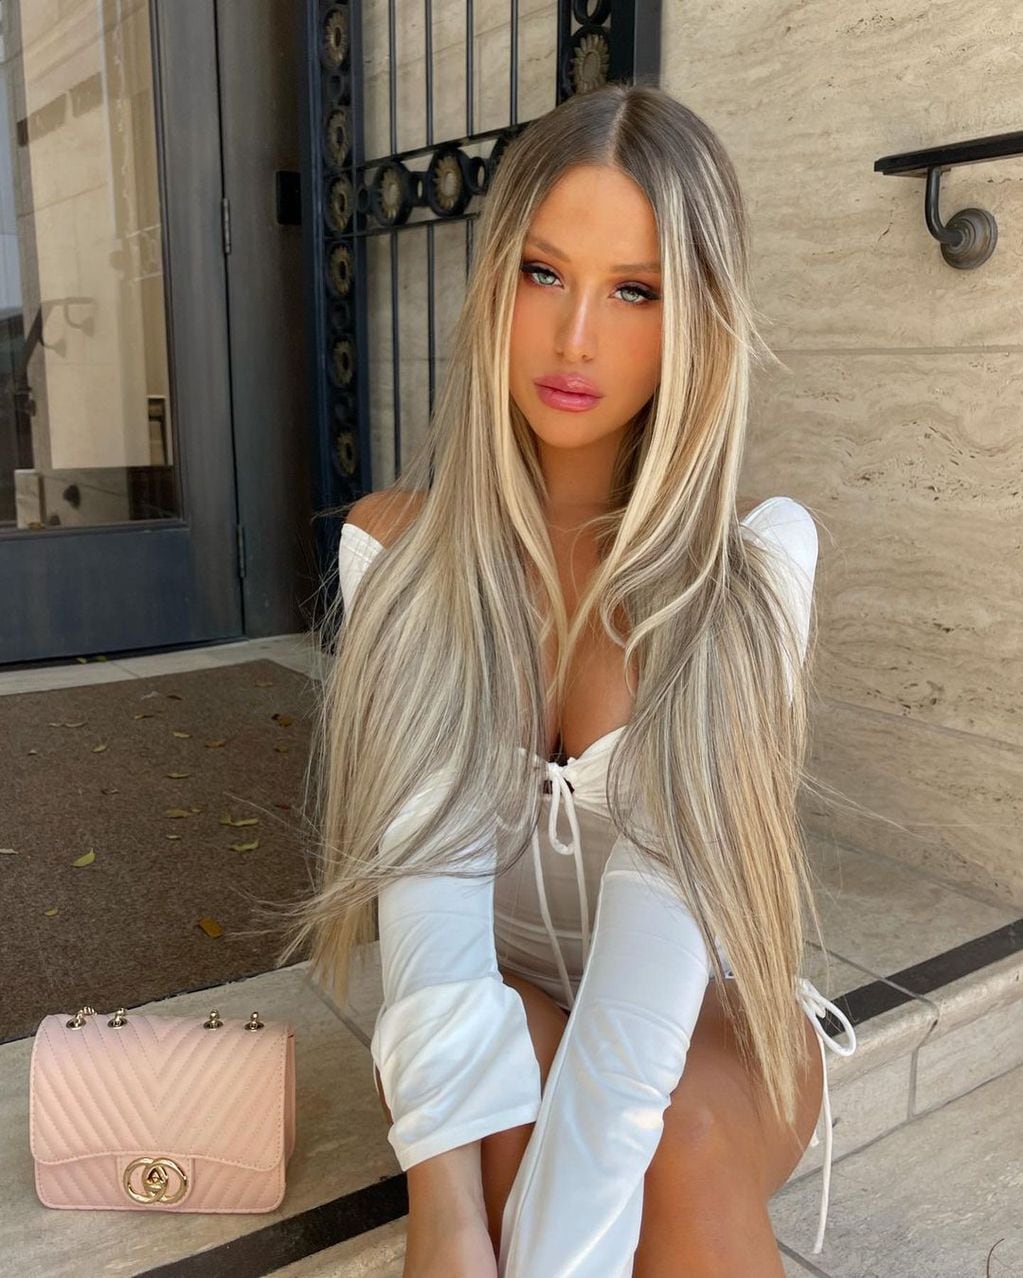 La influencer subió la temperatura en las redes sociales con su mini vestido blanco al cuerpo / Foto: Instagram